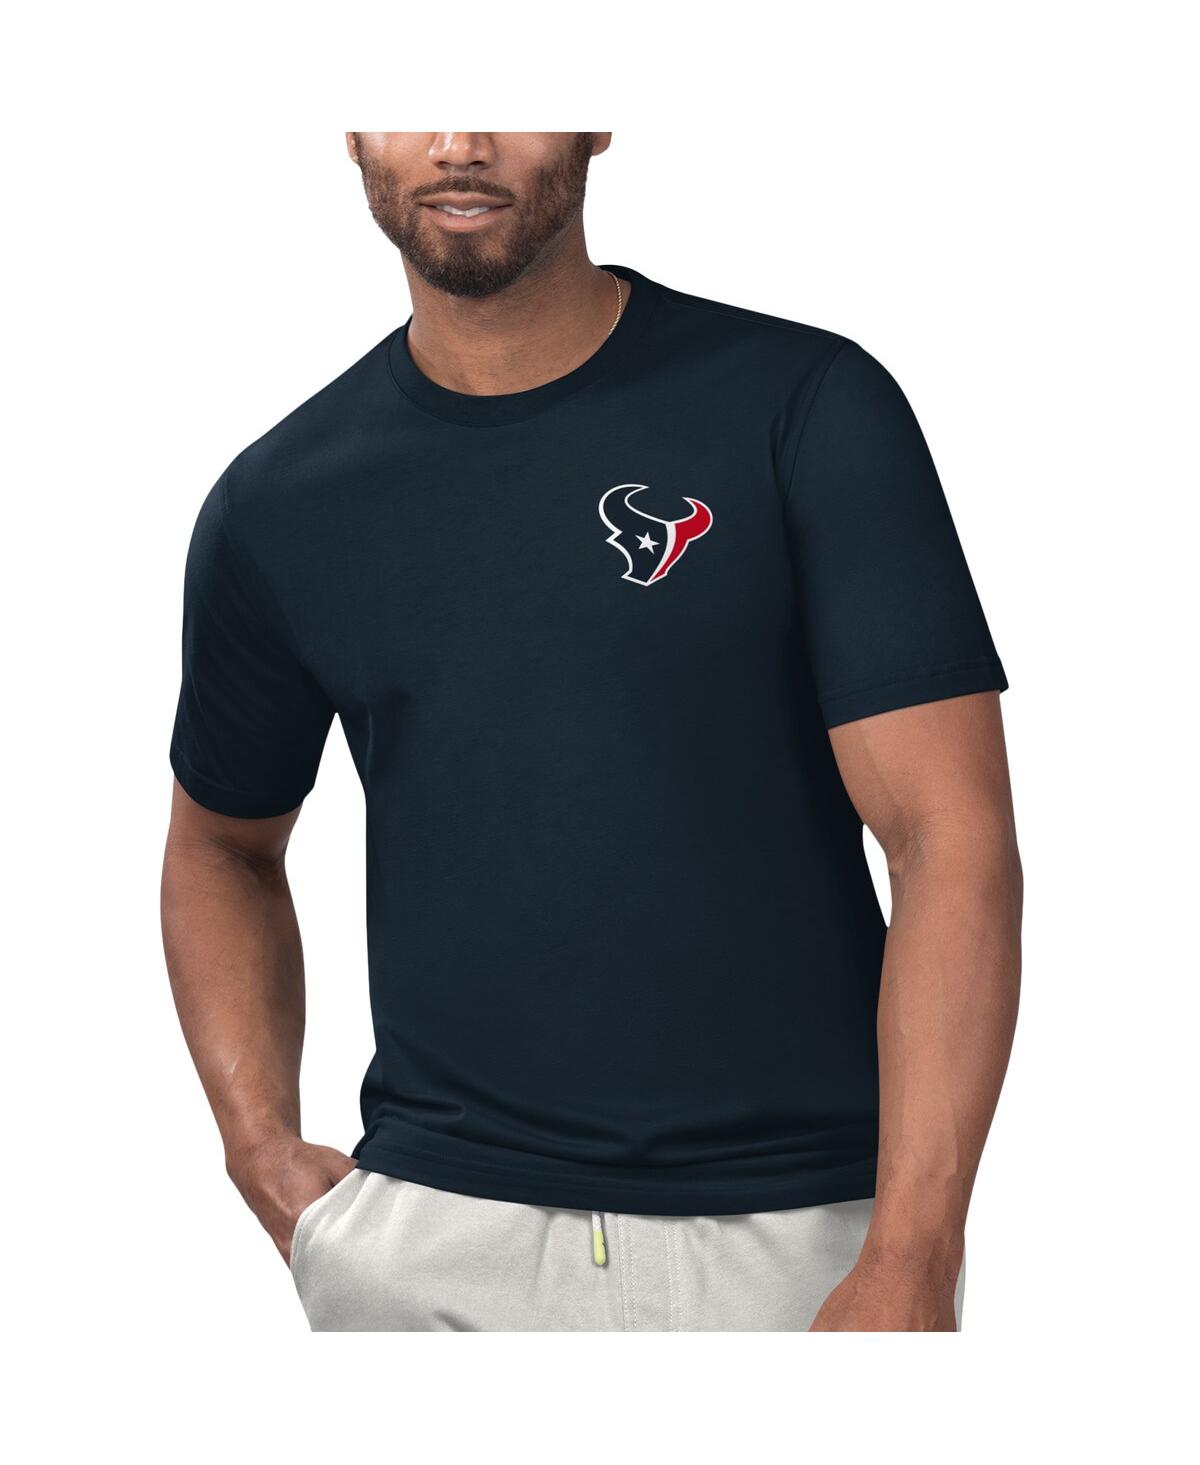 Men's Margaritaville Navy Houston Texans Licensed to Chill T-shirt - Navy